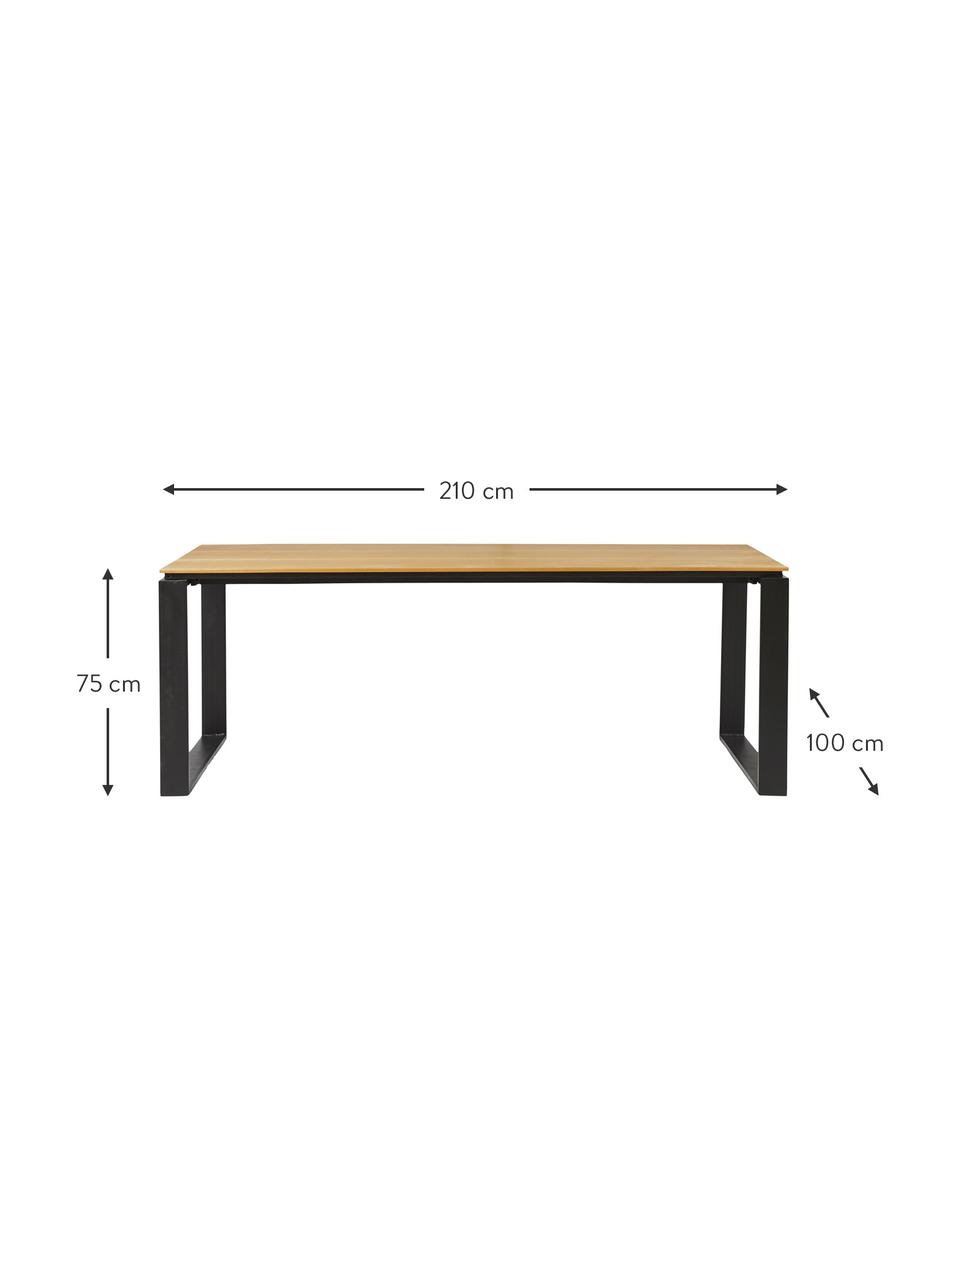 Garten-Esstisch Brutus, Tischplatte: Polywood, Beine: Aluminium, beschichtet, Holz, hell, B 210 x T 100 cm